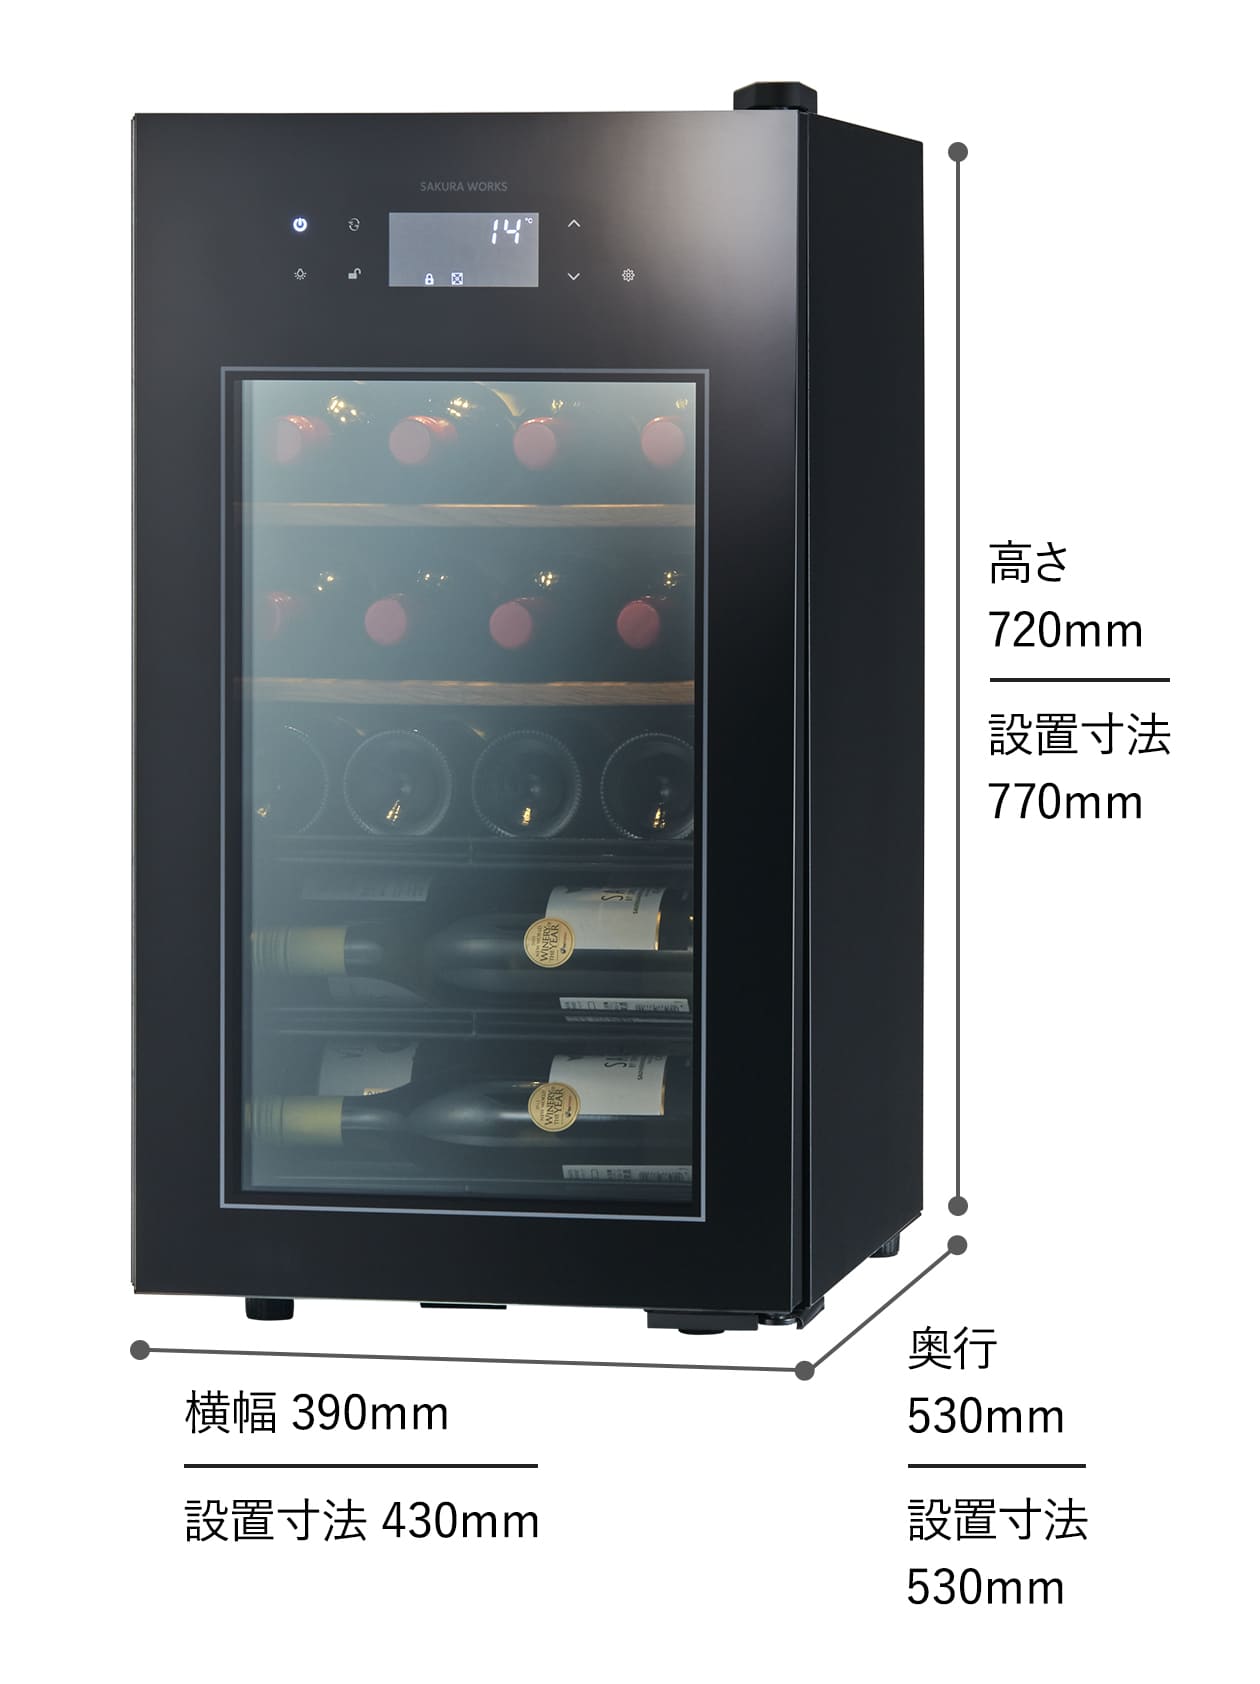 さくら製作所 SA22(ワインセラー) ワインセラー22本収納 低温冷蔵機能